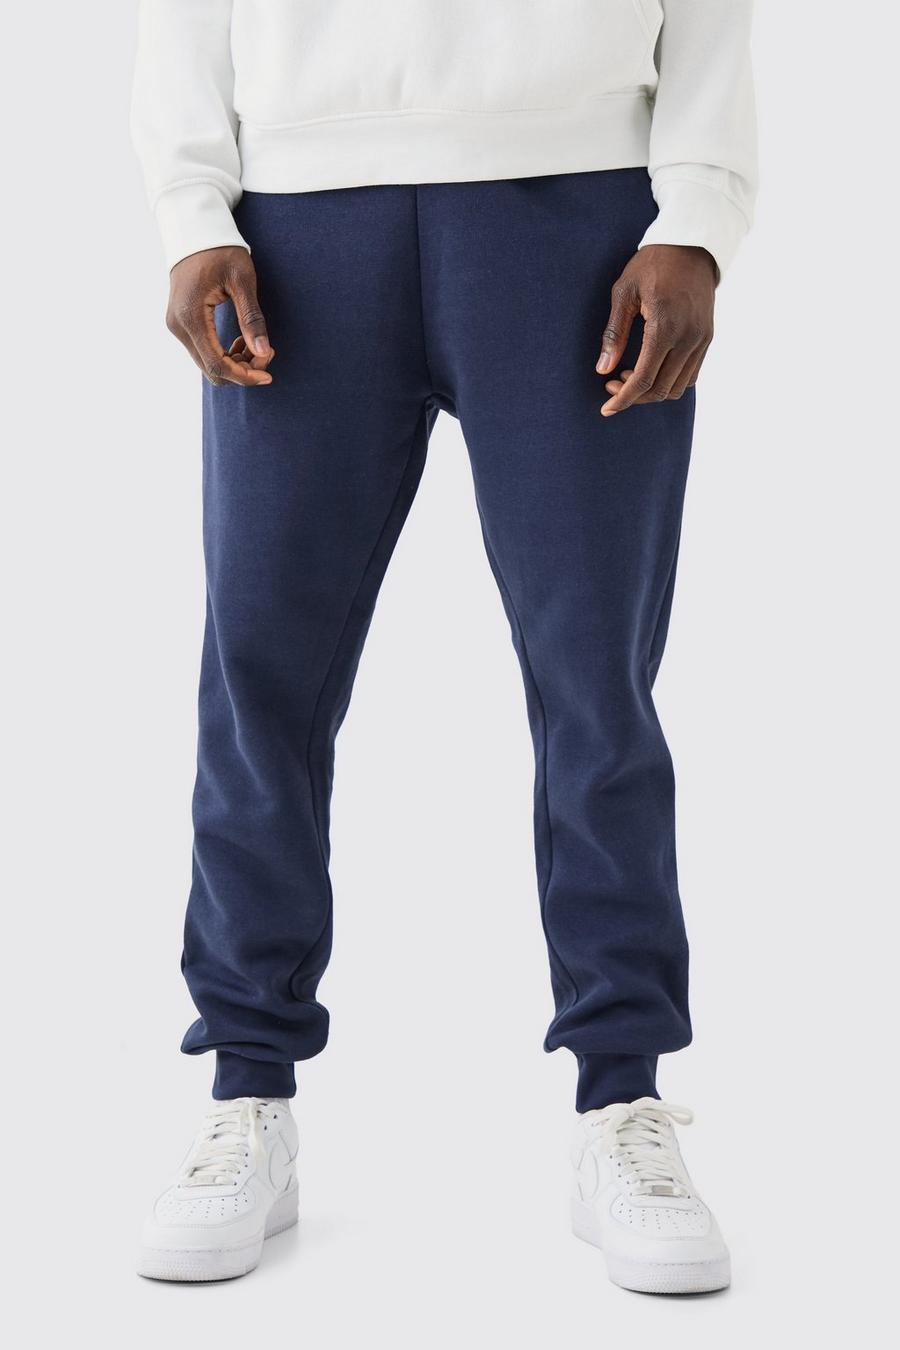 Pantaloni tuta Basic Slim Fit, Navy